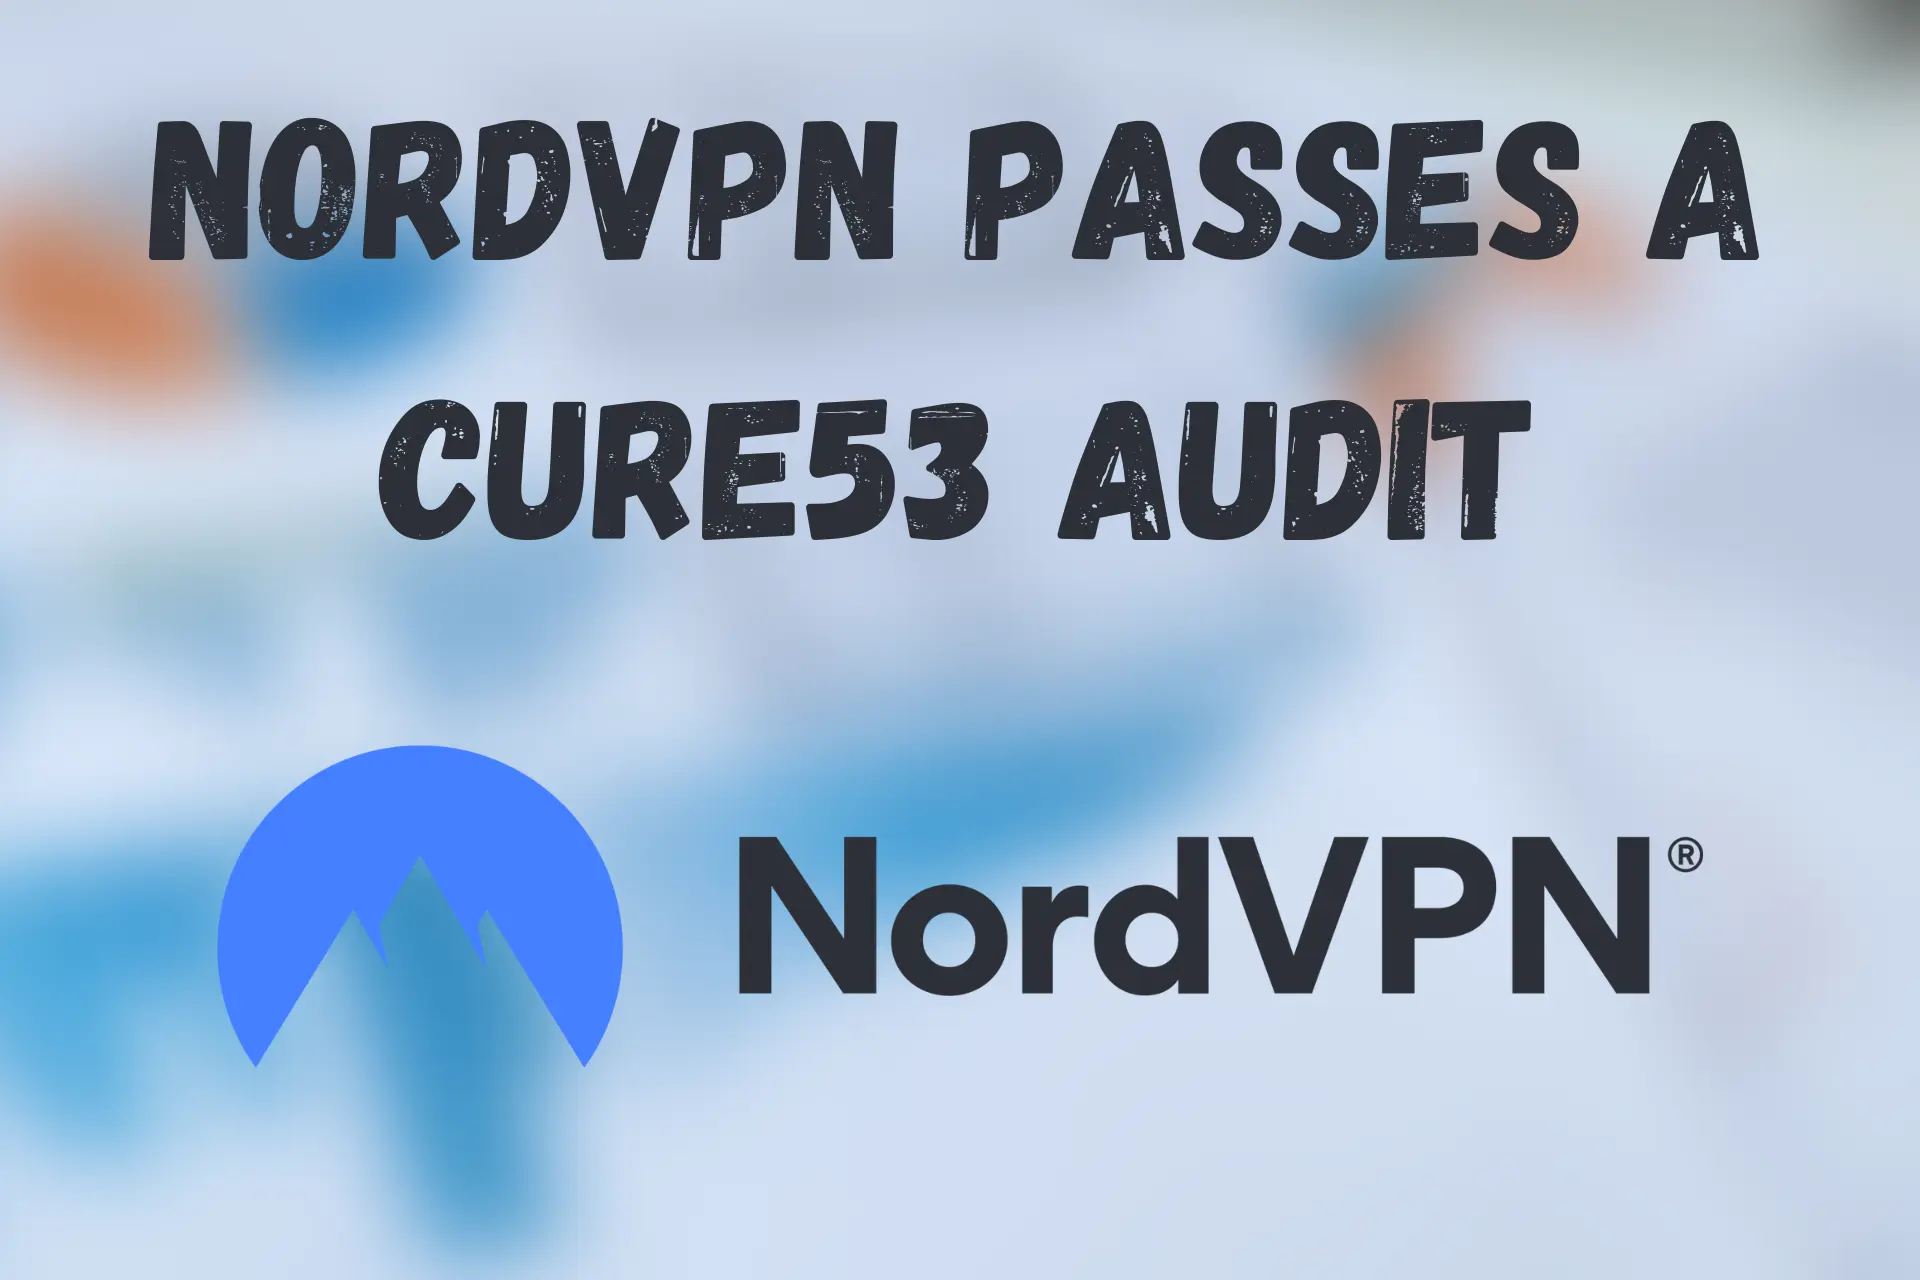 NordVPN passes a Cure53 audit